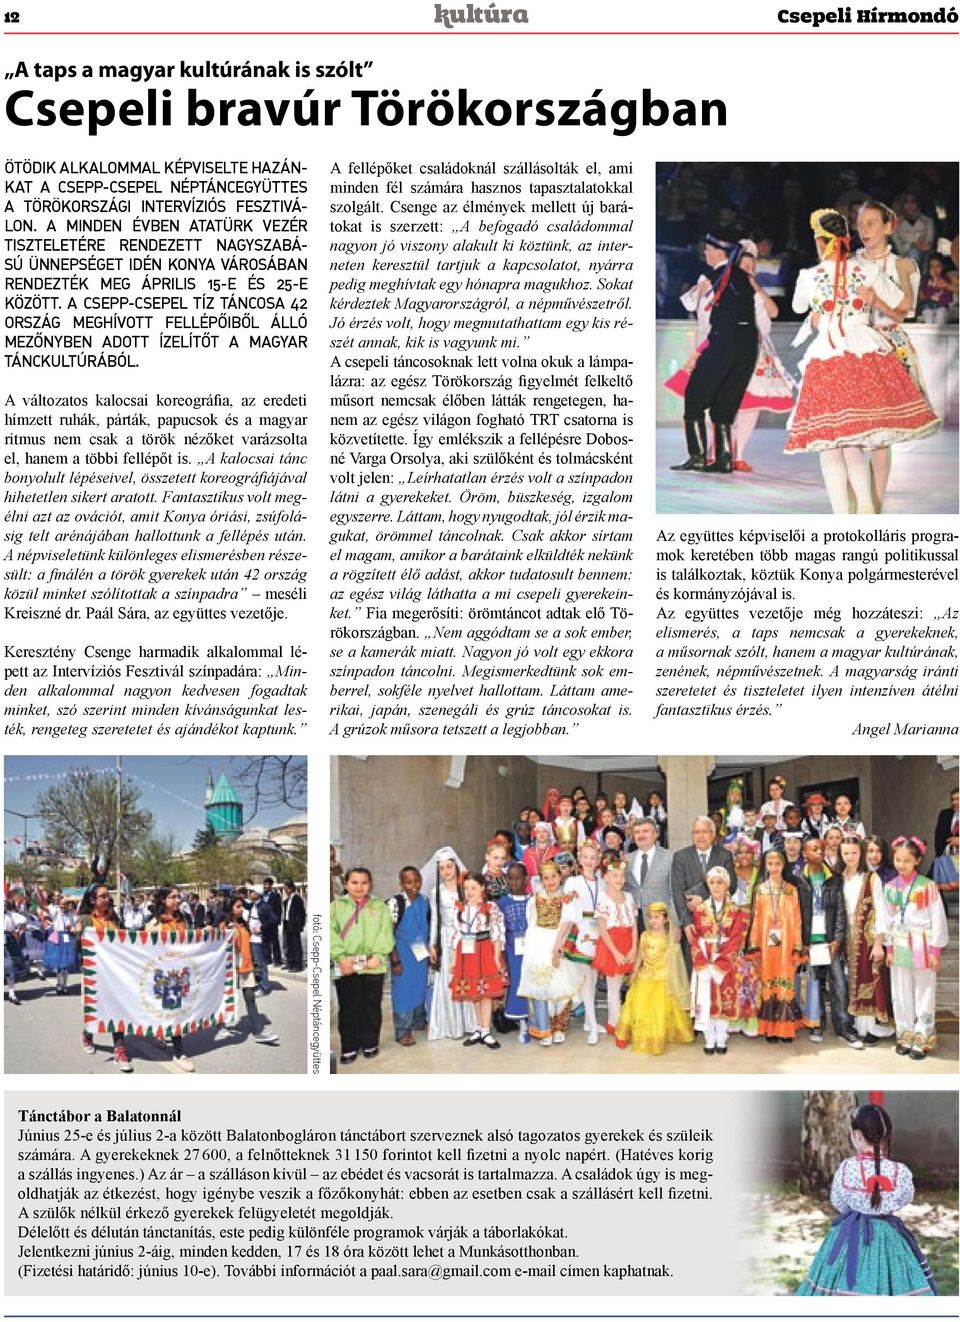 A Csepp-Csepel tíz táncosa 42 ország meghívott fellépőiből álló mezőnyben adott ízelítőt a magyar tánckultúrából.